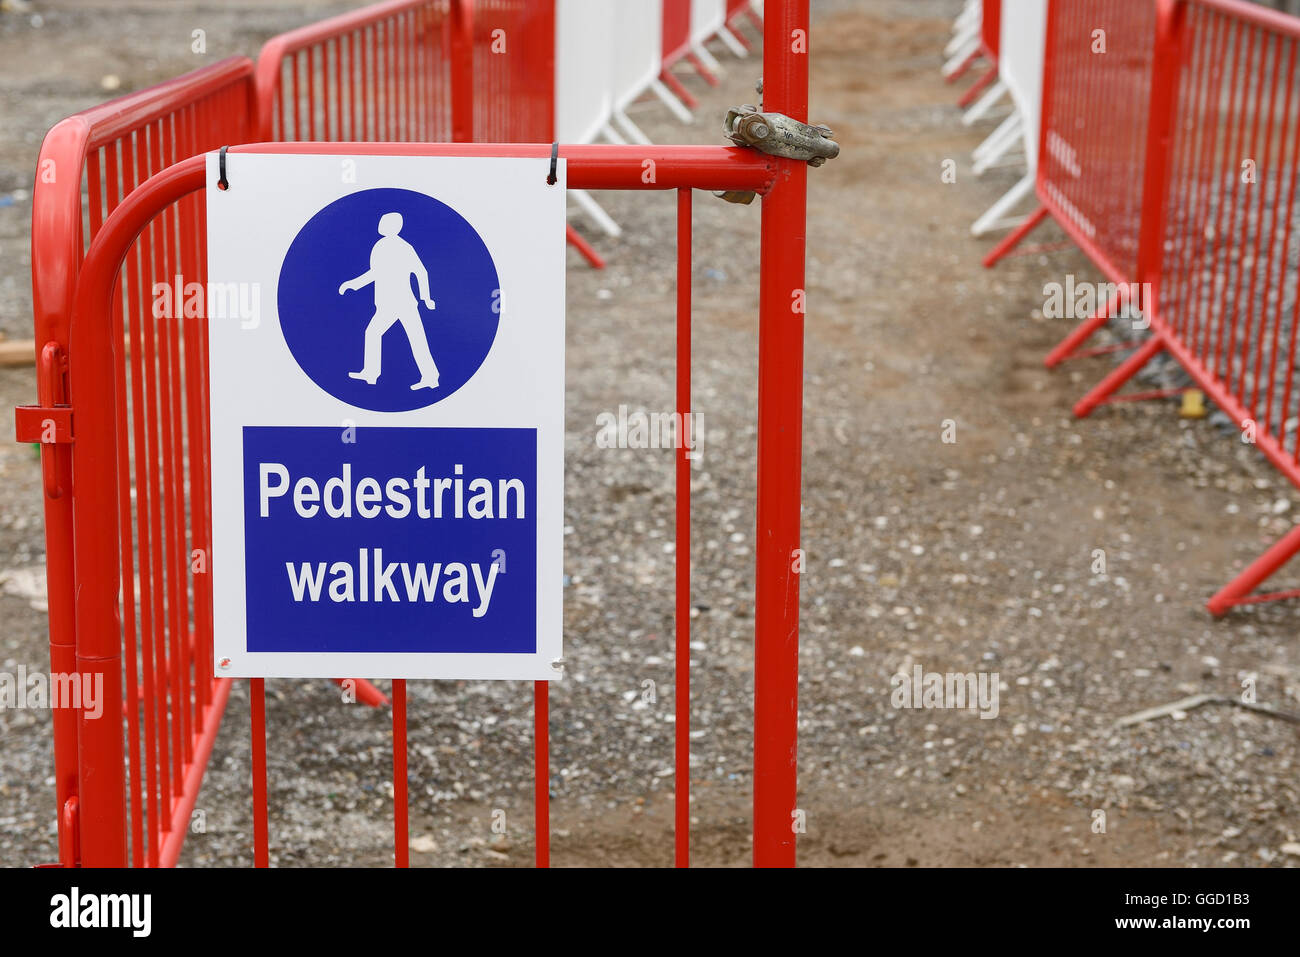 Passaggio pedonale firmare e barriere su un Regno Unito sito in costruzione Foto Stock